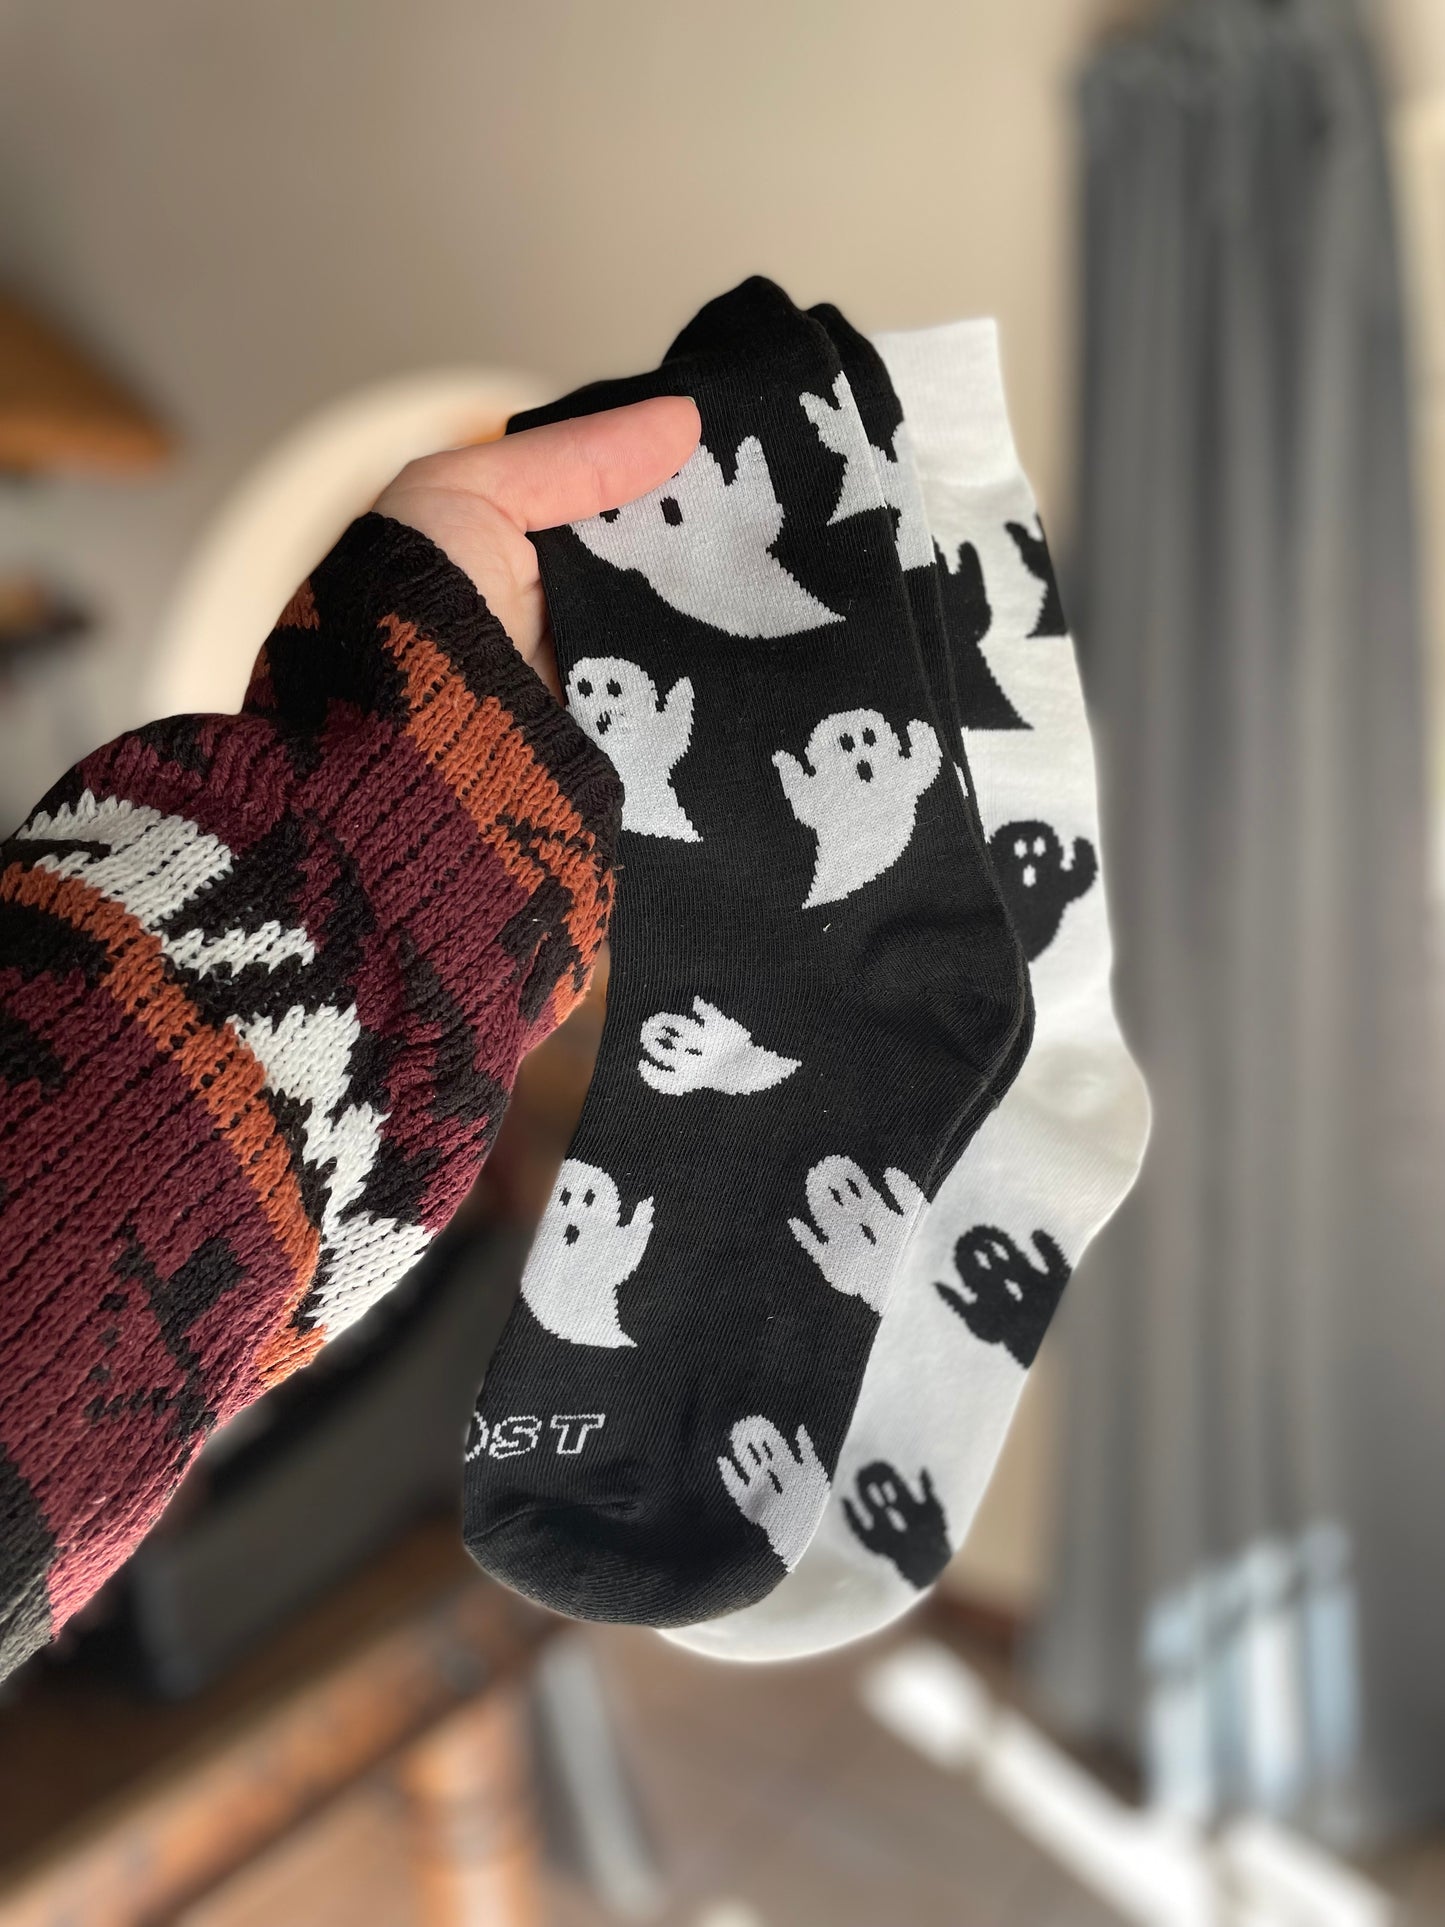 Ghost socks